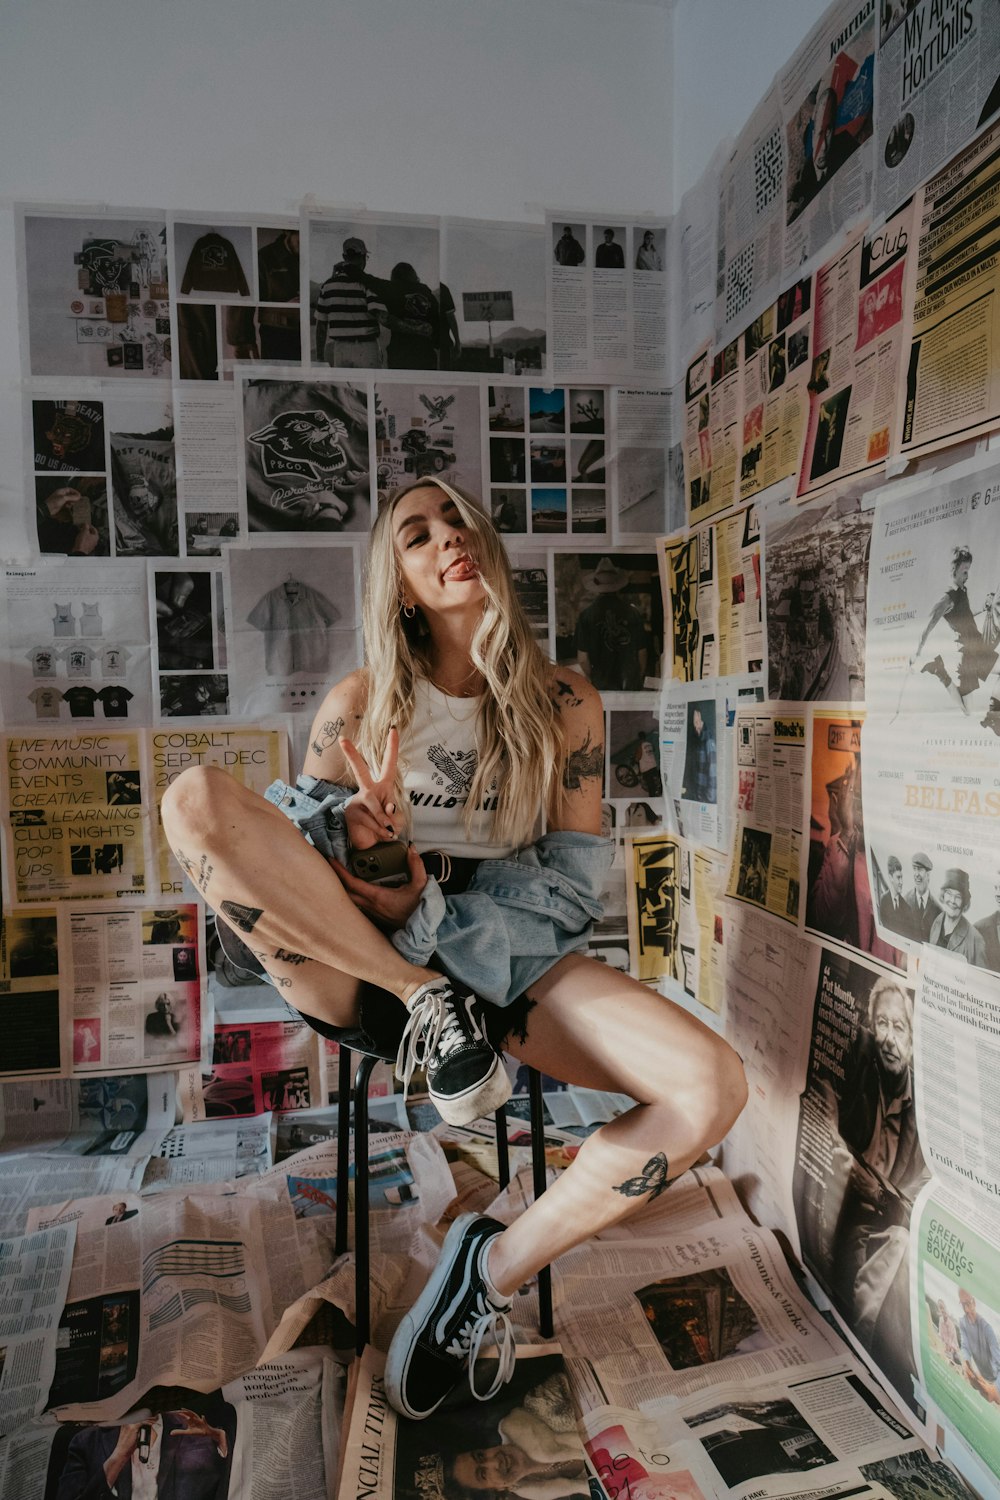 신문으로 덮인 벽 앞 의자에 앉아 있는 여자